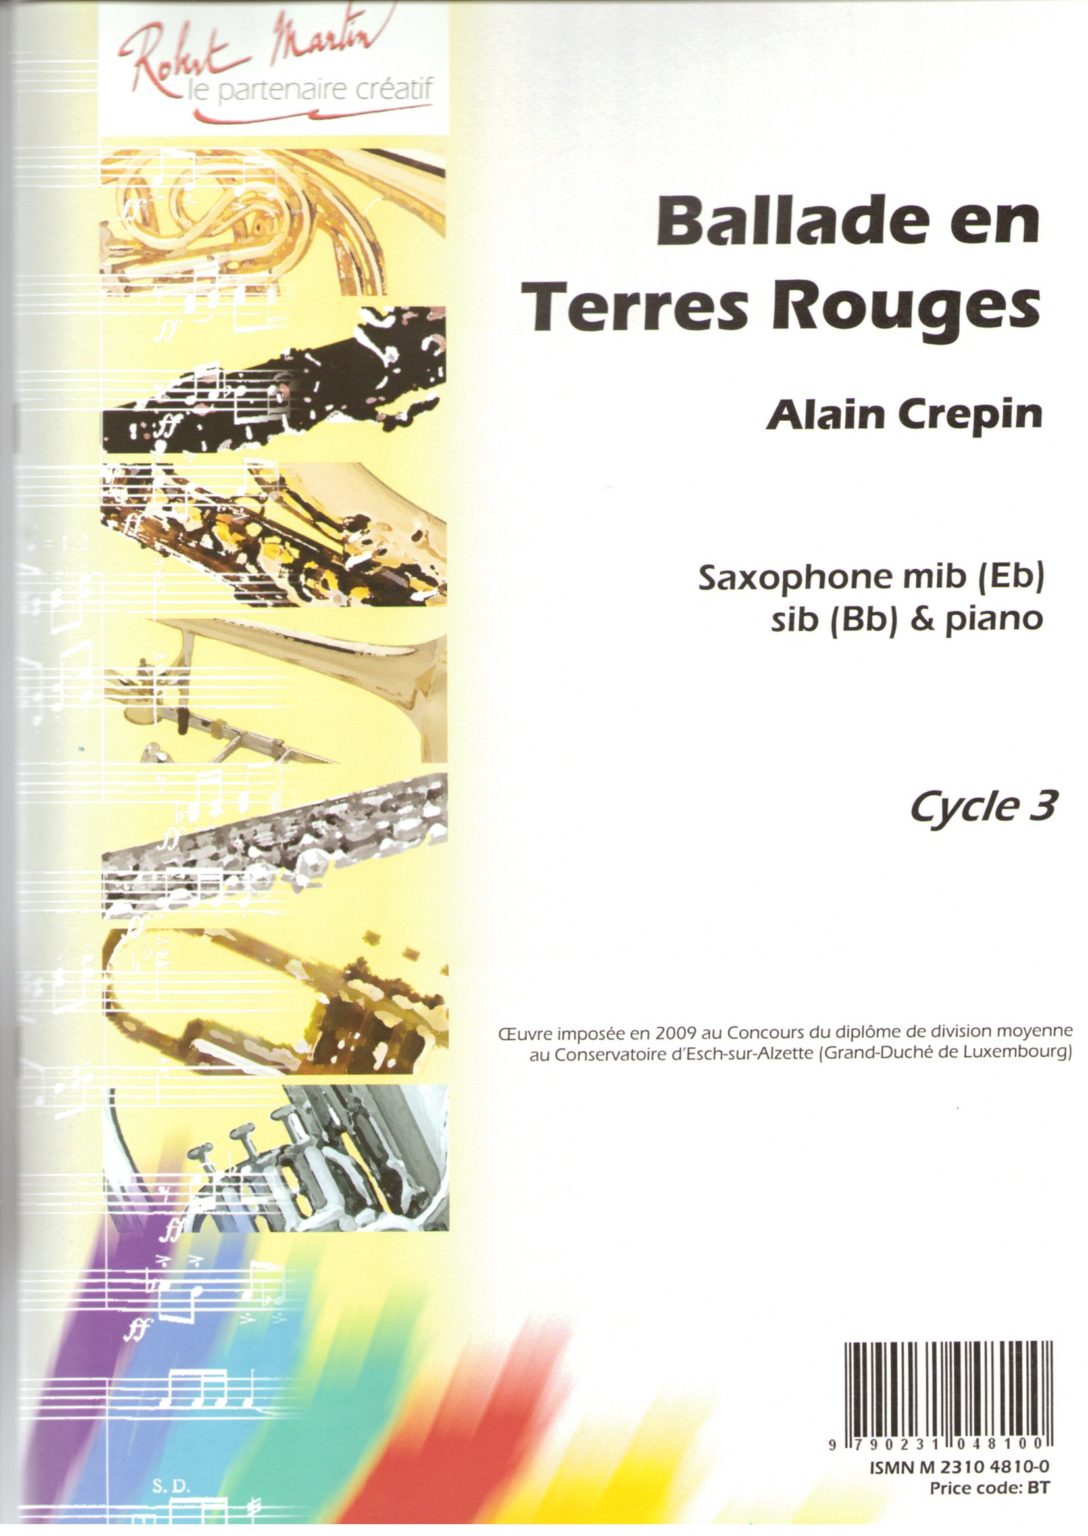 Ballade en Terres Rouges (2009) para saxofón tenor o saxofón soprano. Alain Crepin